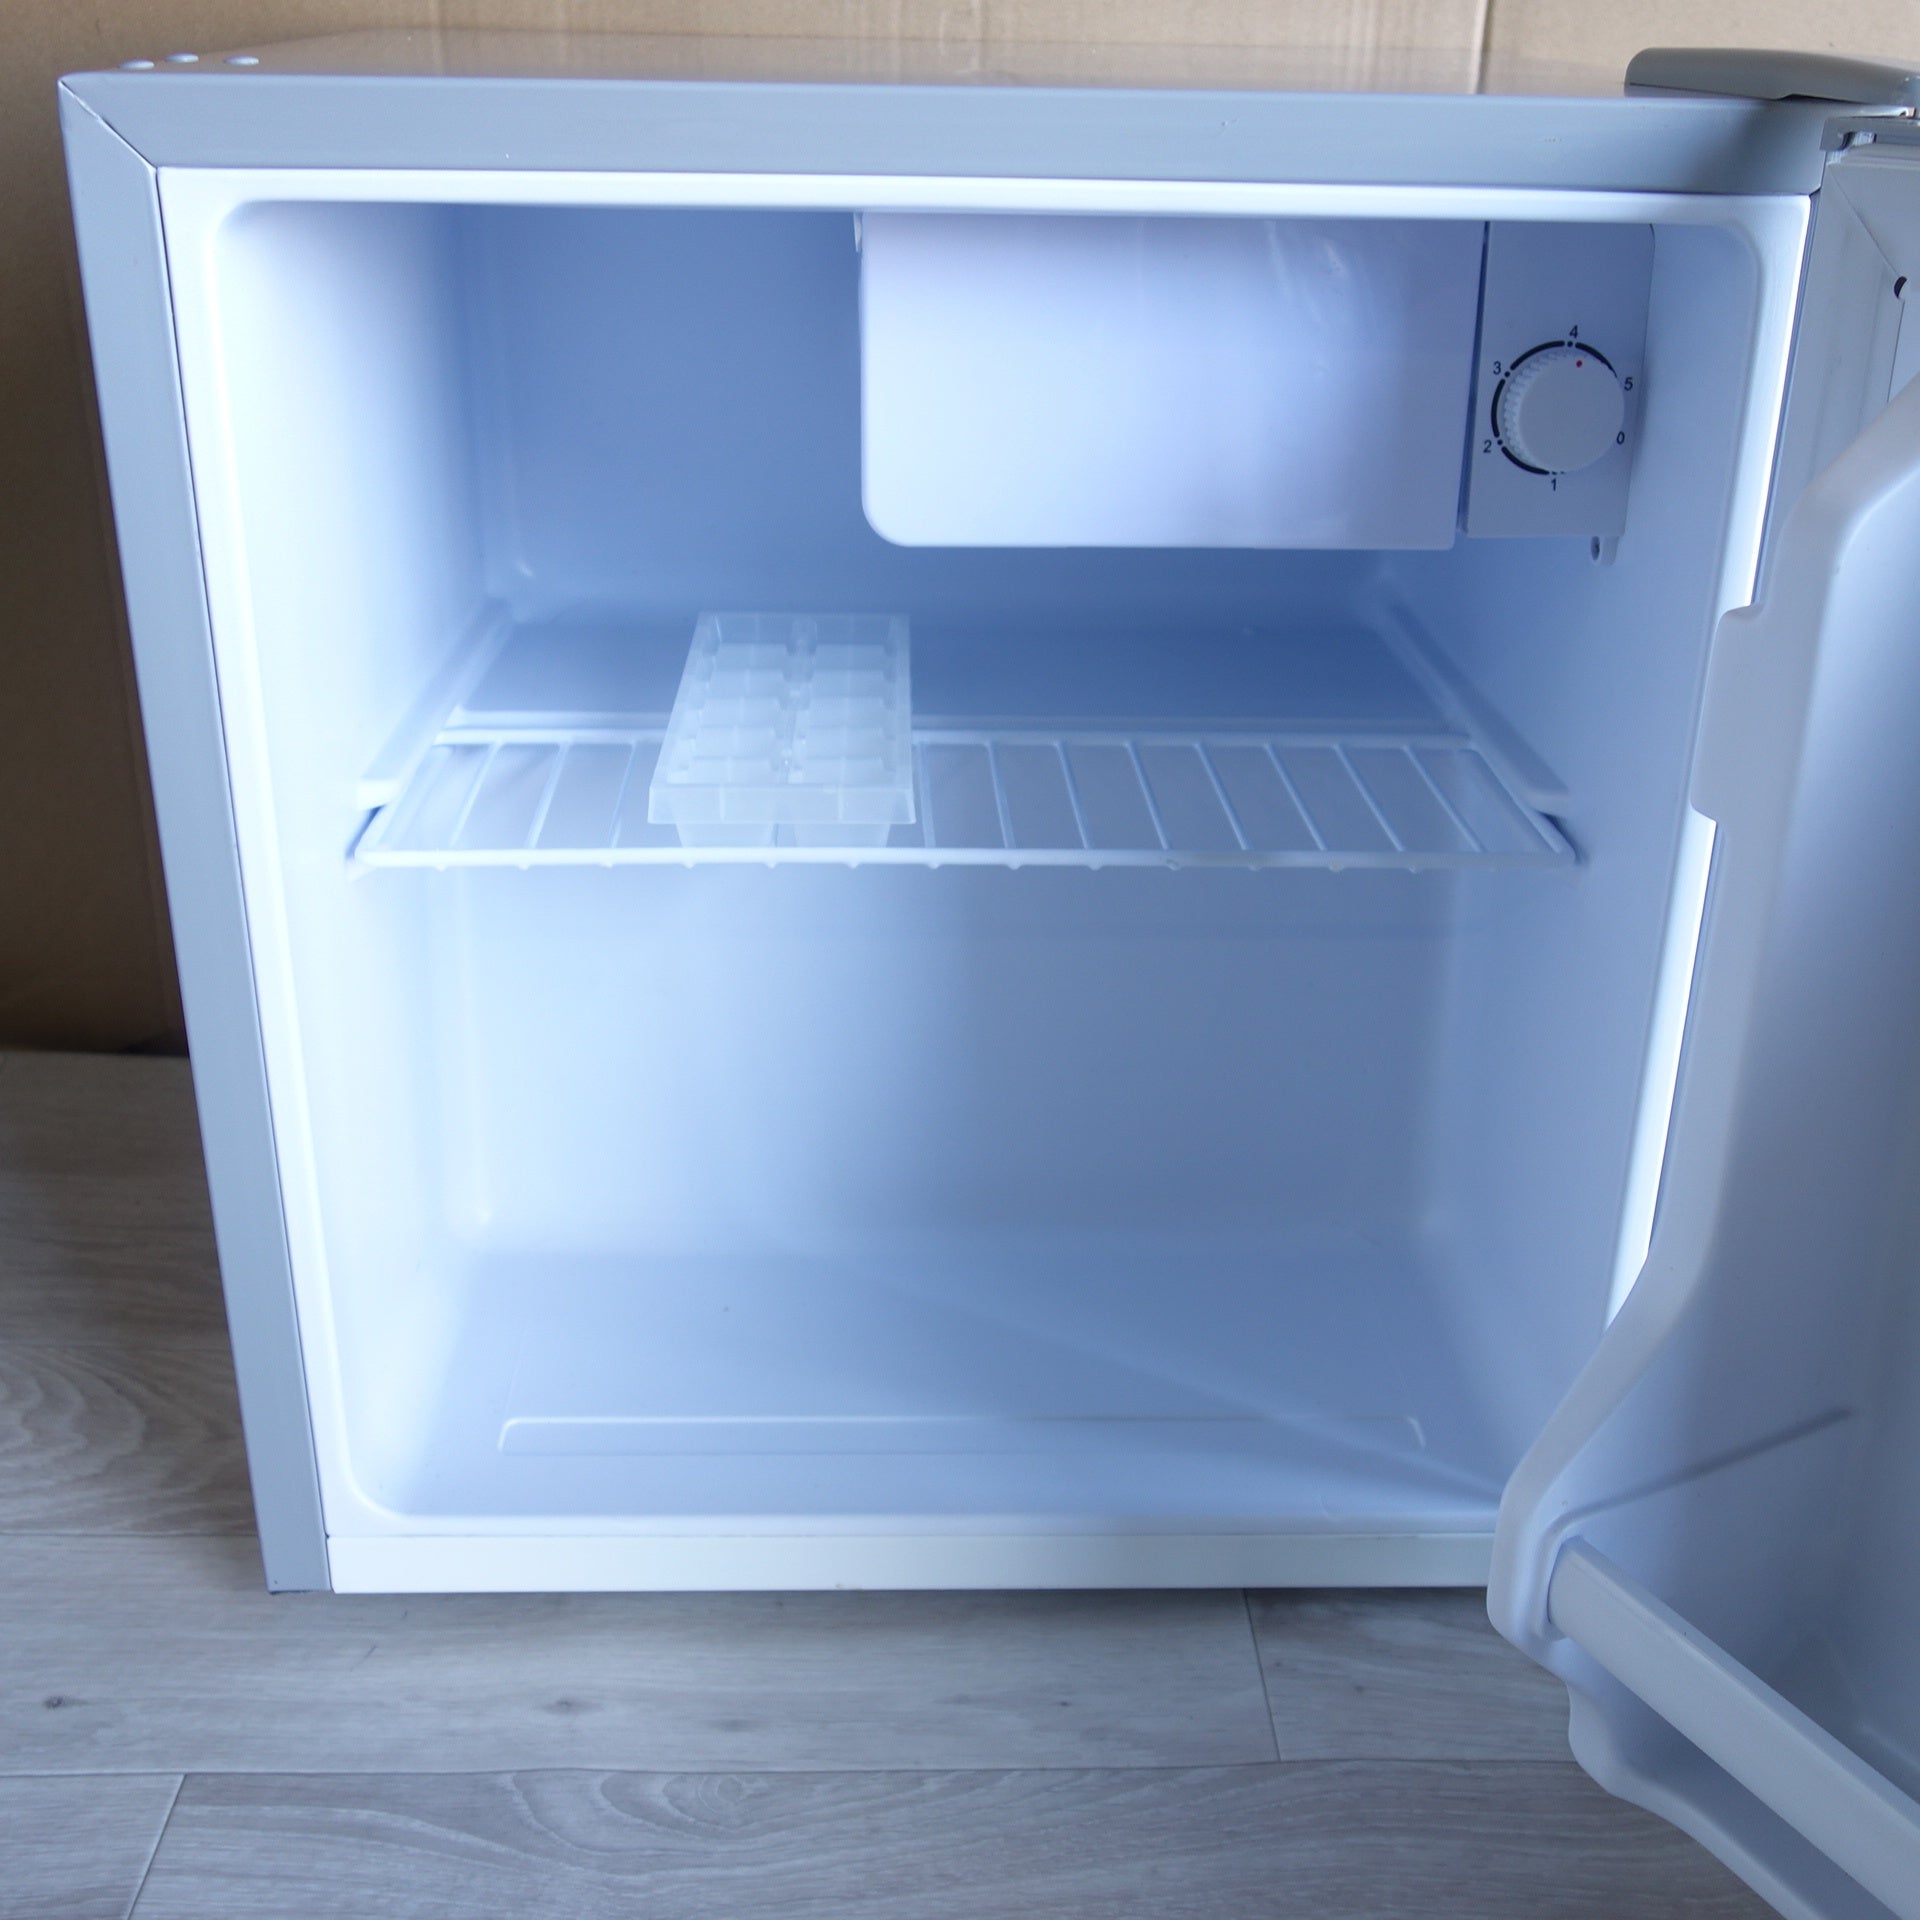 [送料無料] ☆アズマ 電気冷蔵庫 MR-50B 46L 1ドア 小型 ミニ 製氷室つき 2021年製 ひとり暮らし 家電 単身 ホテル オフィス  右開き☆